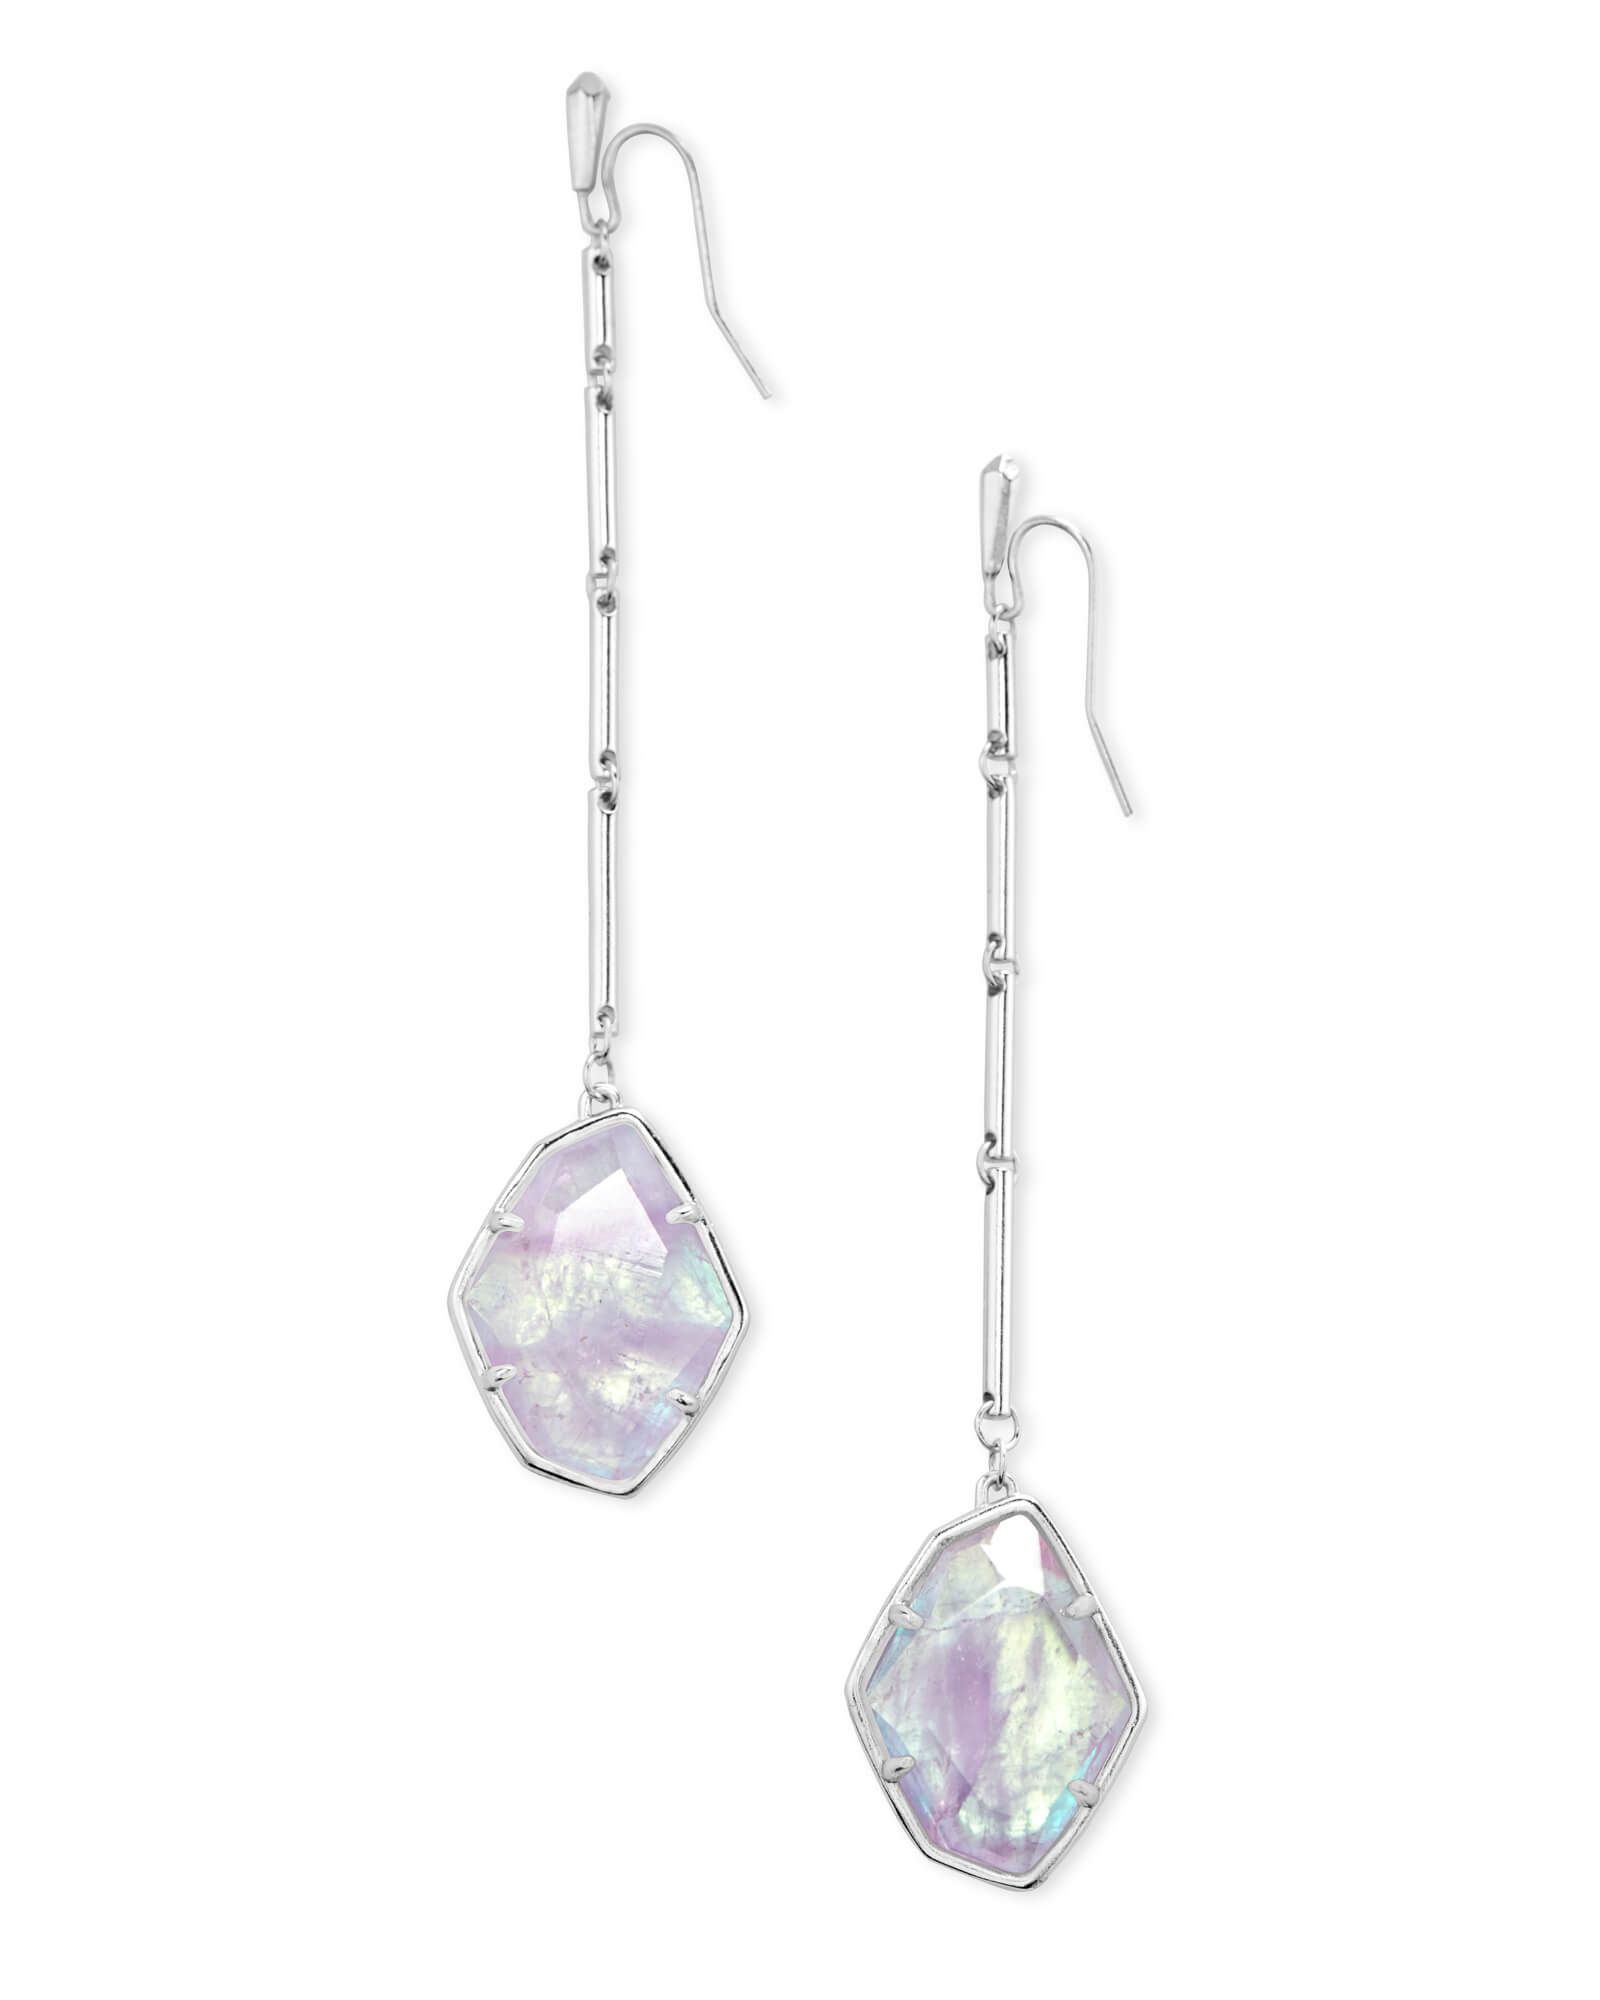 Charmian Silver Drop Earrings in Amethyst Dichroic Glass | Kendra Scott